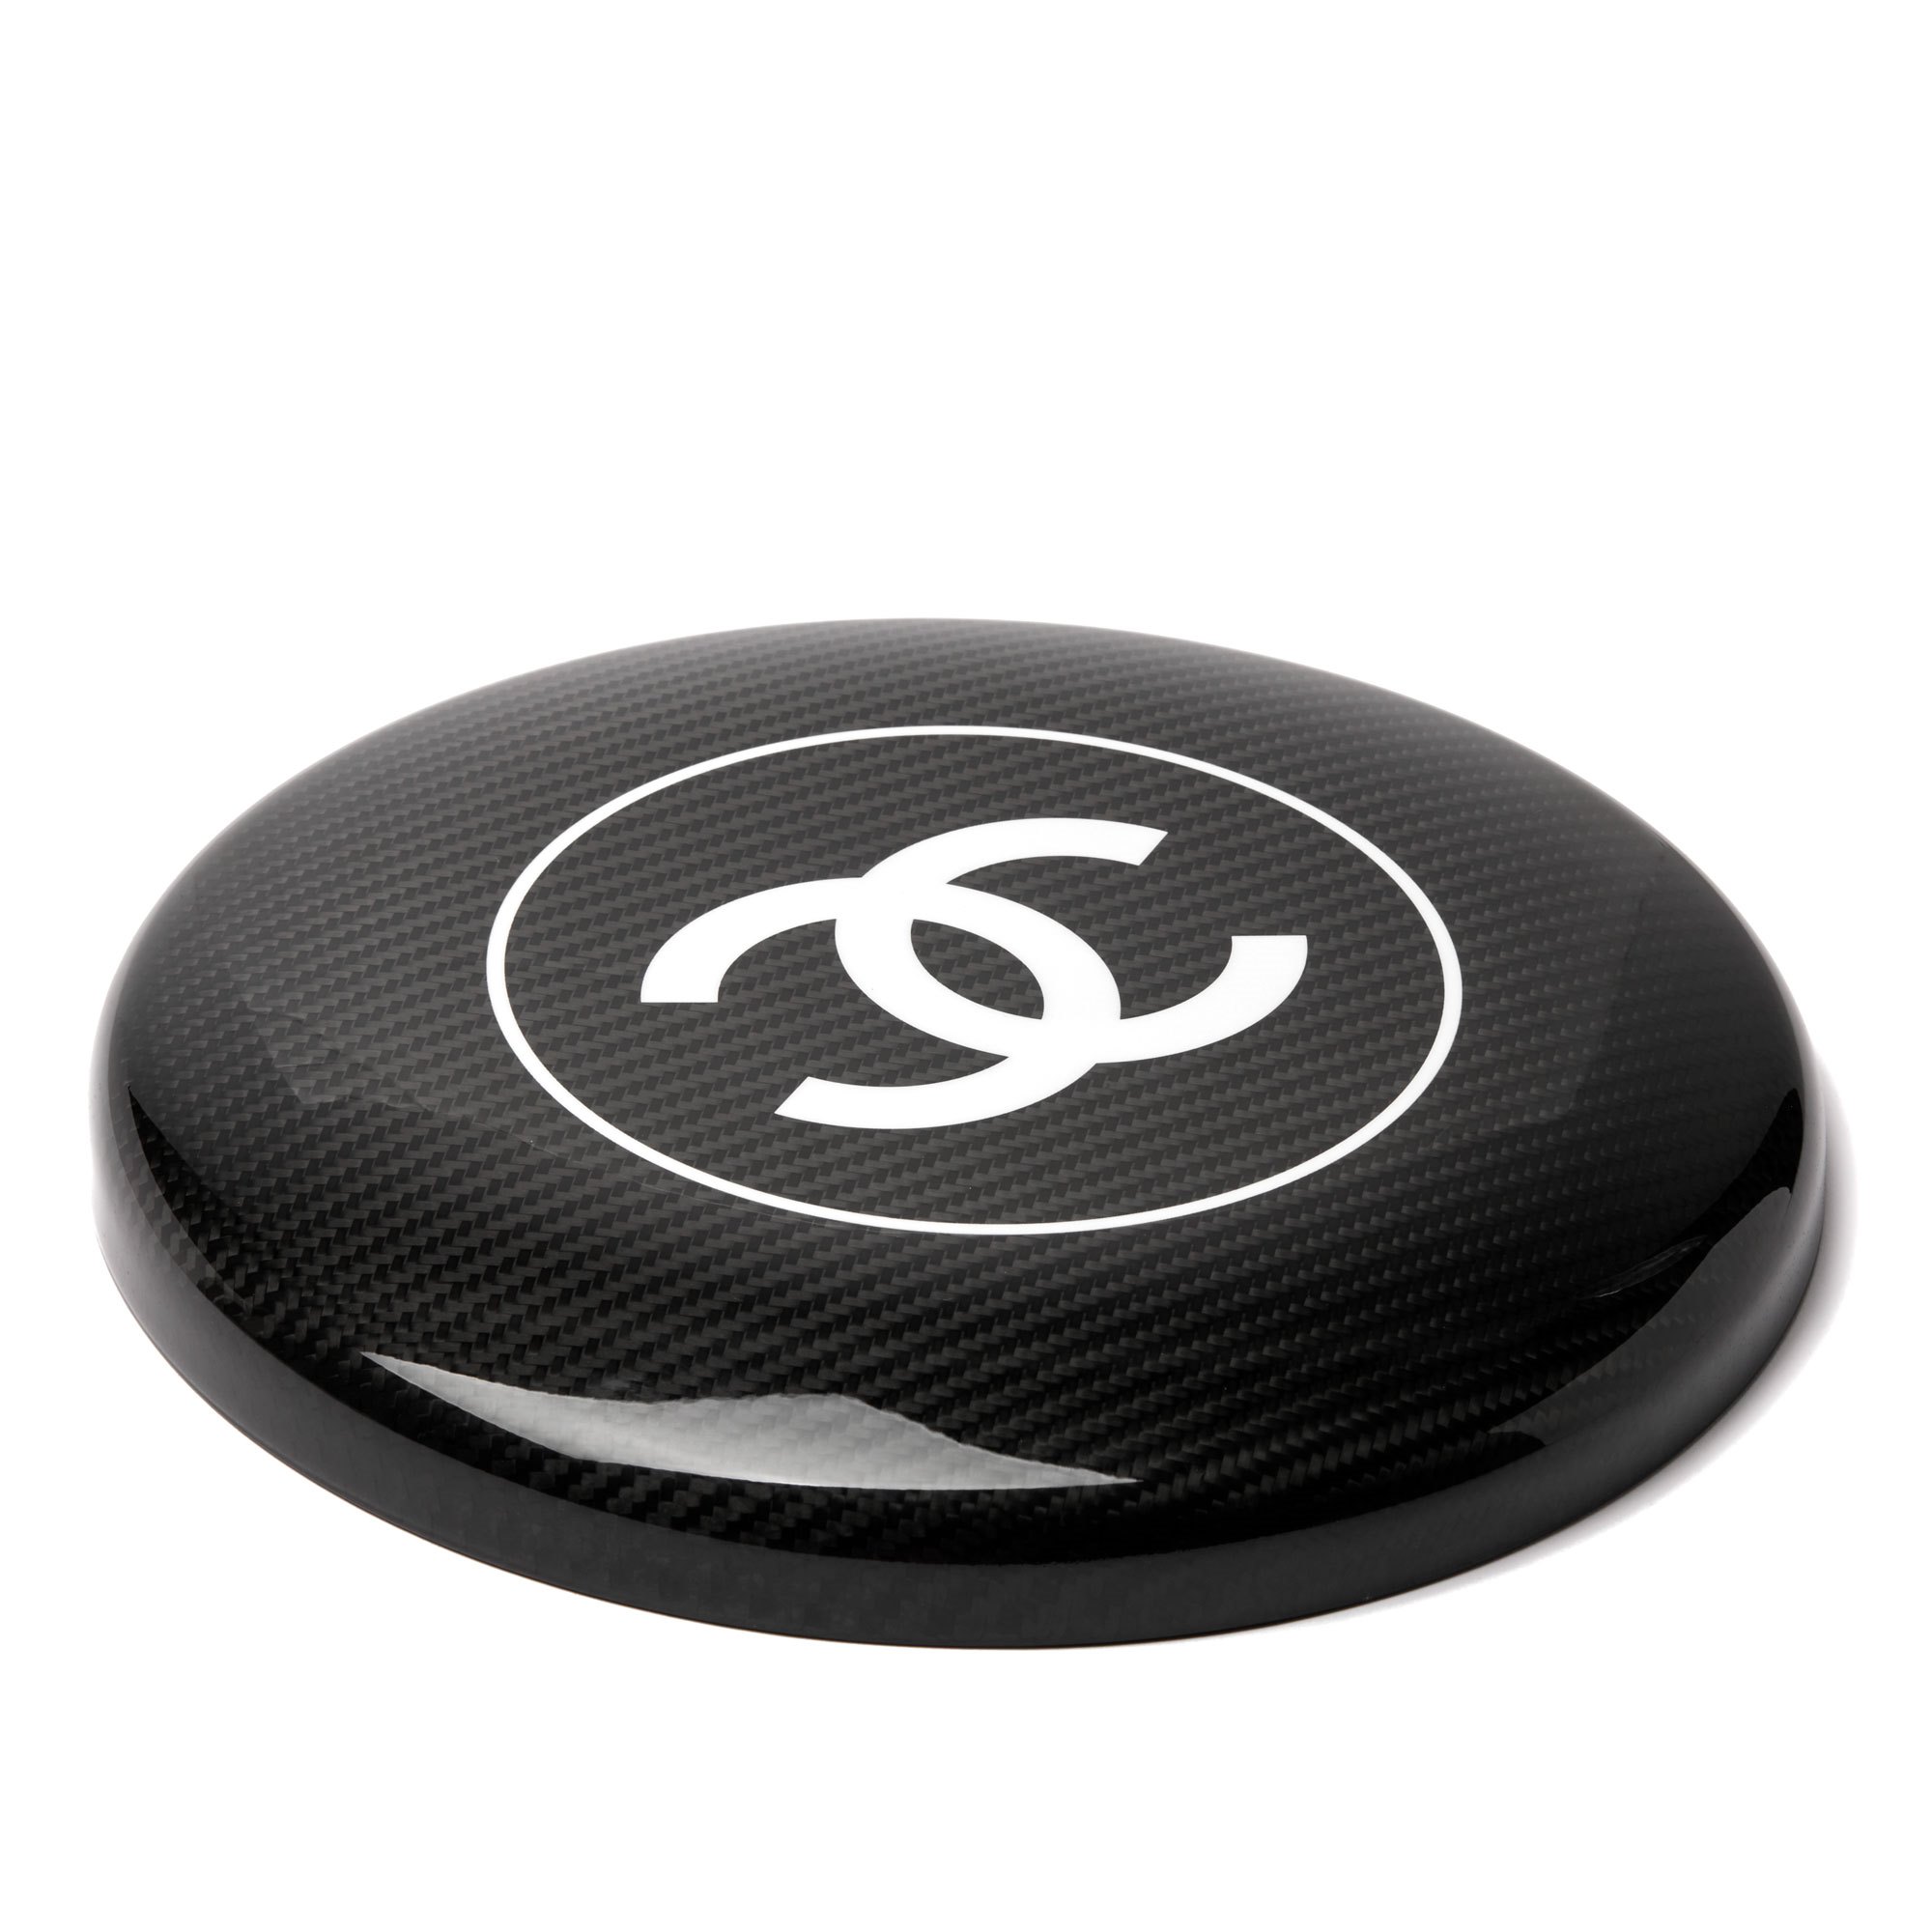 Chanel Black & White Carbon Fibre Classic Frisbee Disc